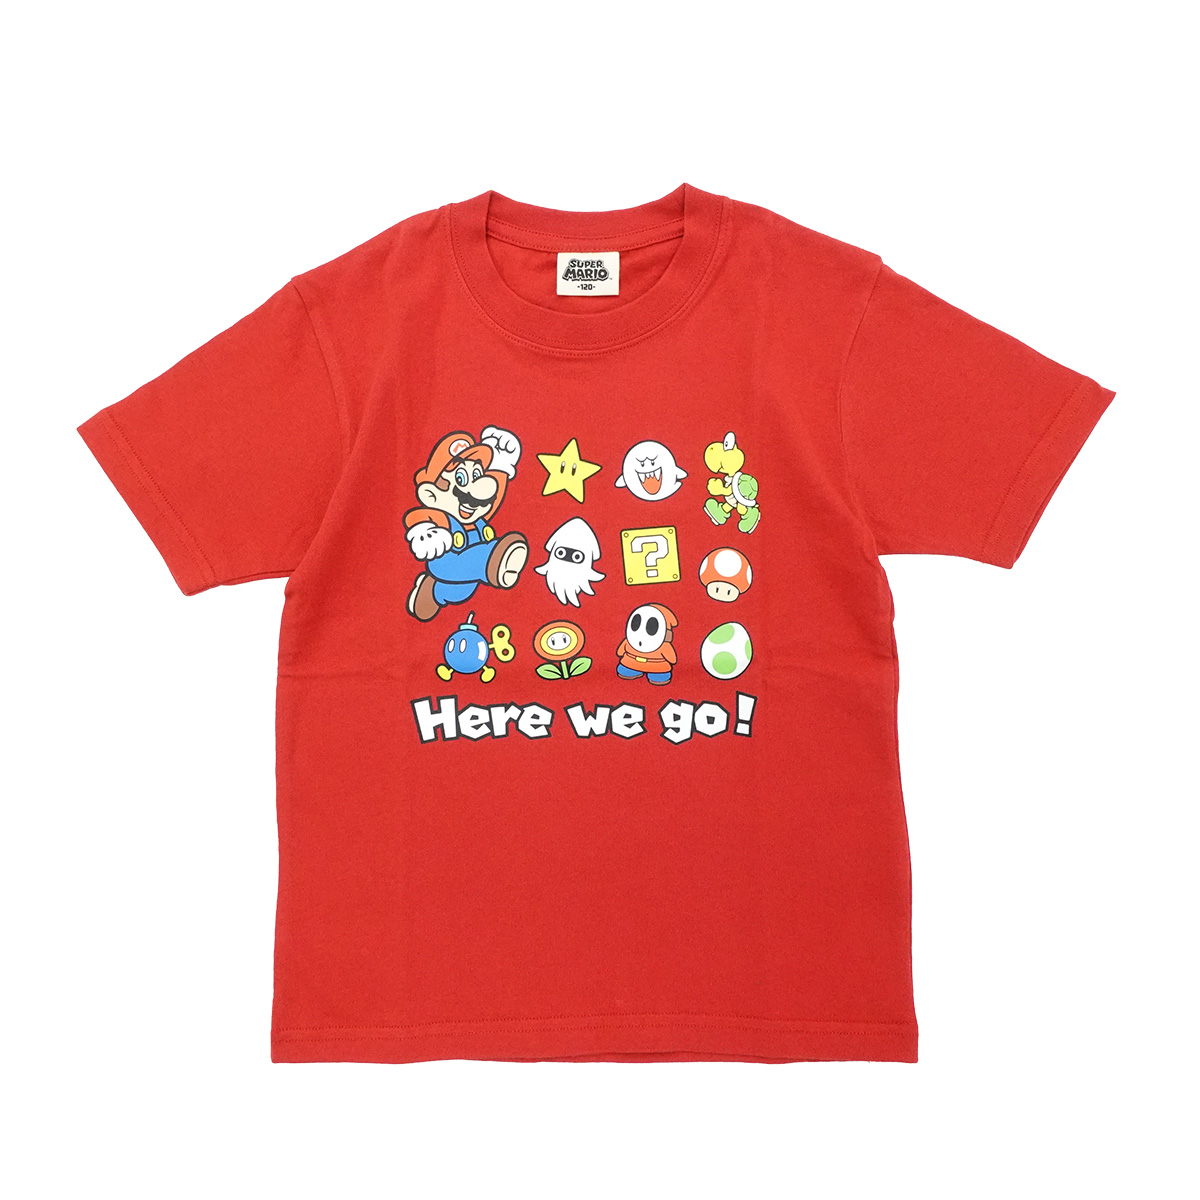 スーパーマリオ 子供服 キッズ Tシャツ KIDS HERE WE GO Tシャツ 半袖 男の子 女の子 120 130 140